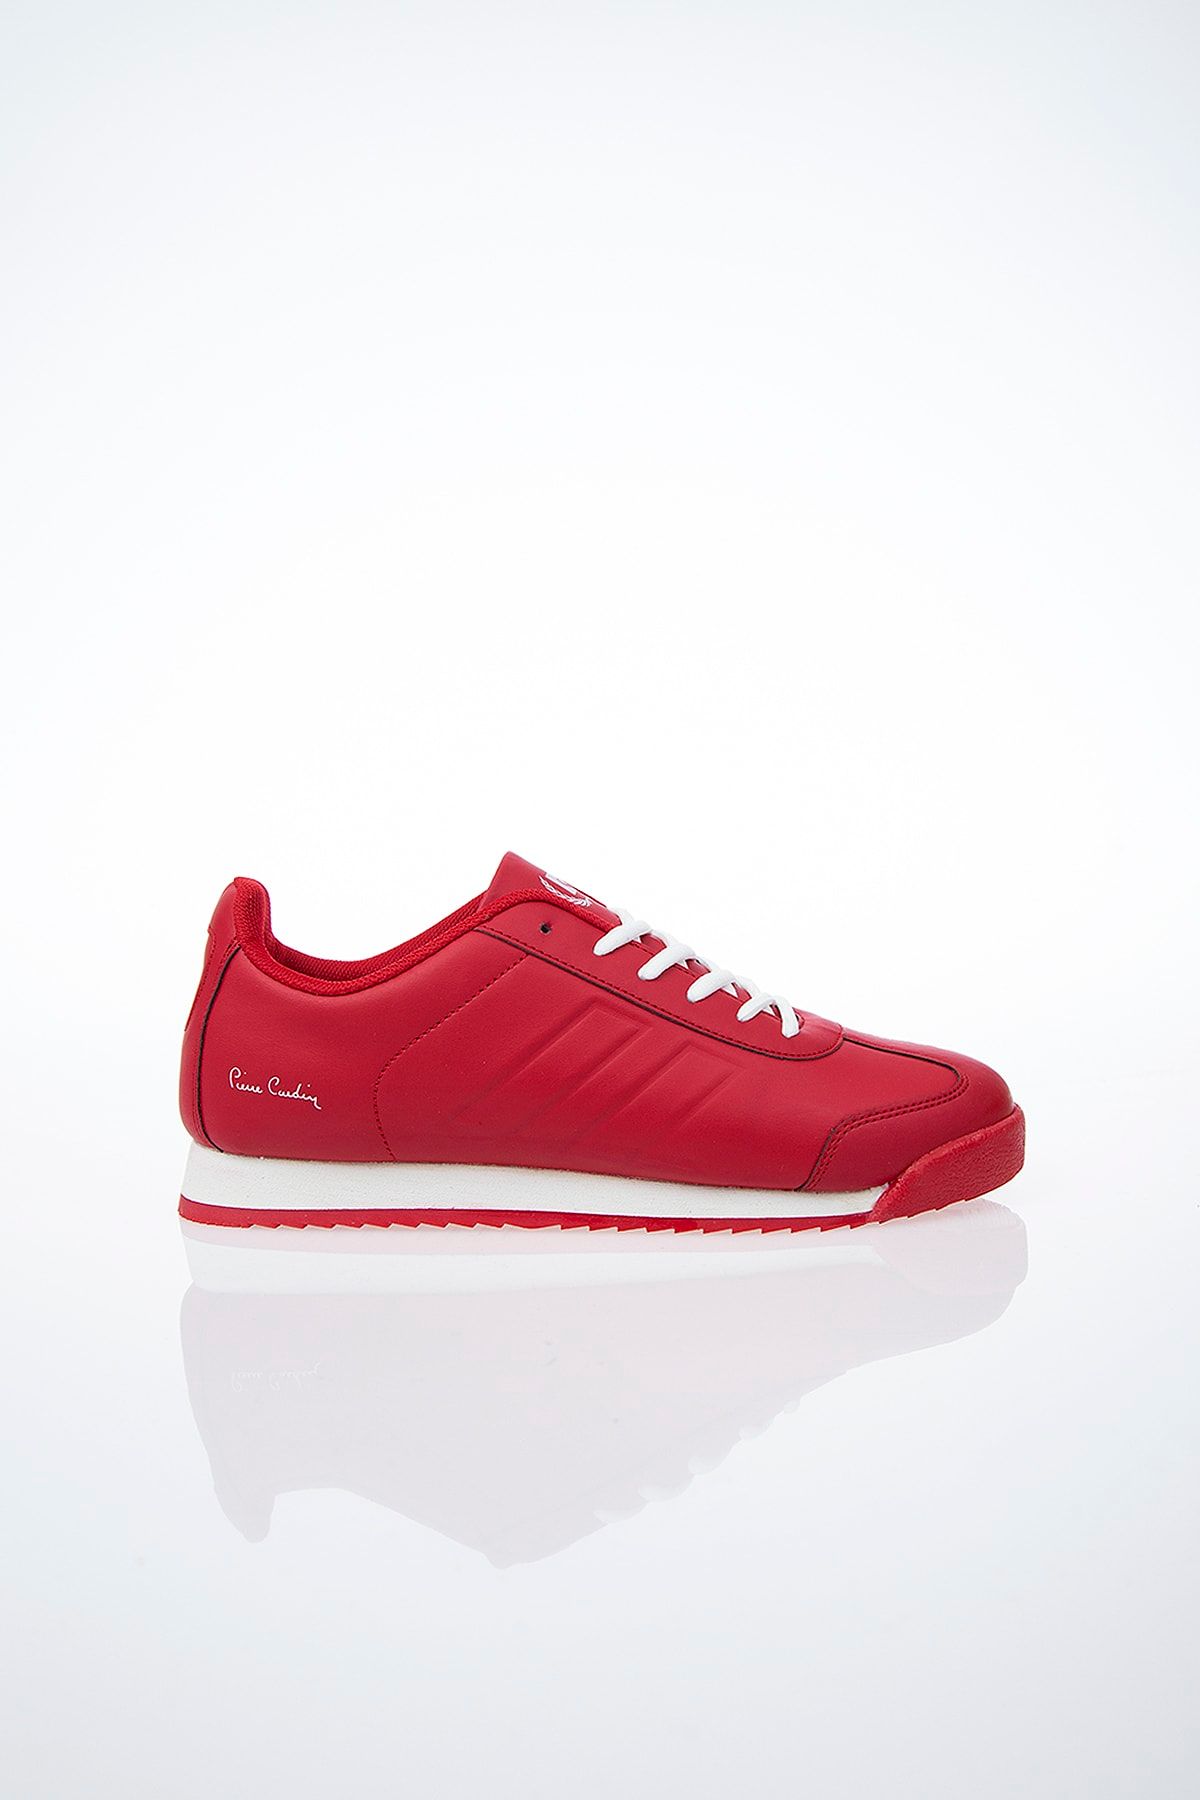 Pierre Cardin PC-30488 Kırmızı Erkek Spor Ayakkabı